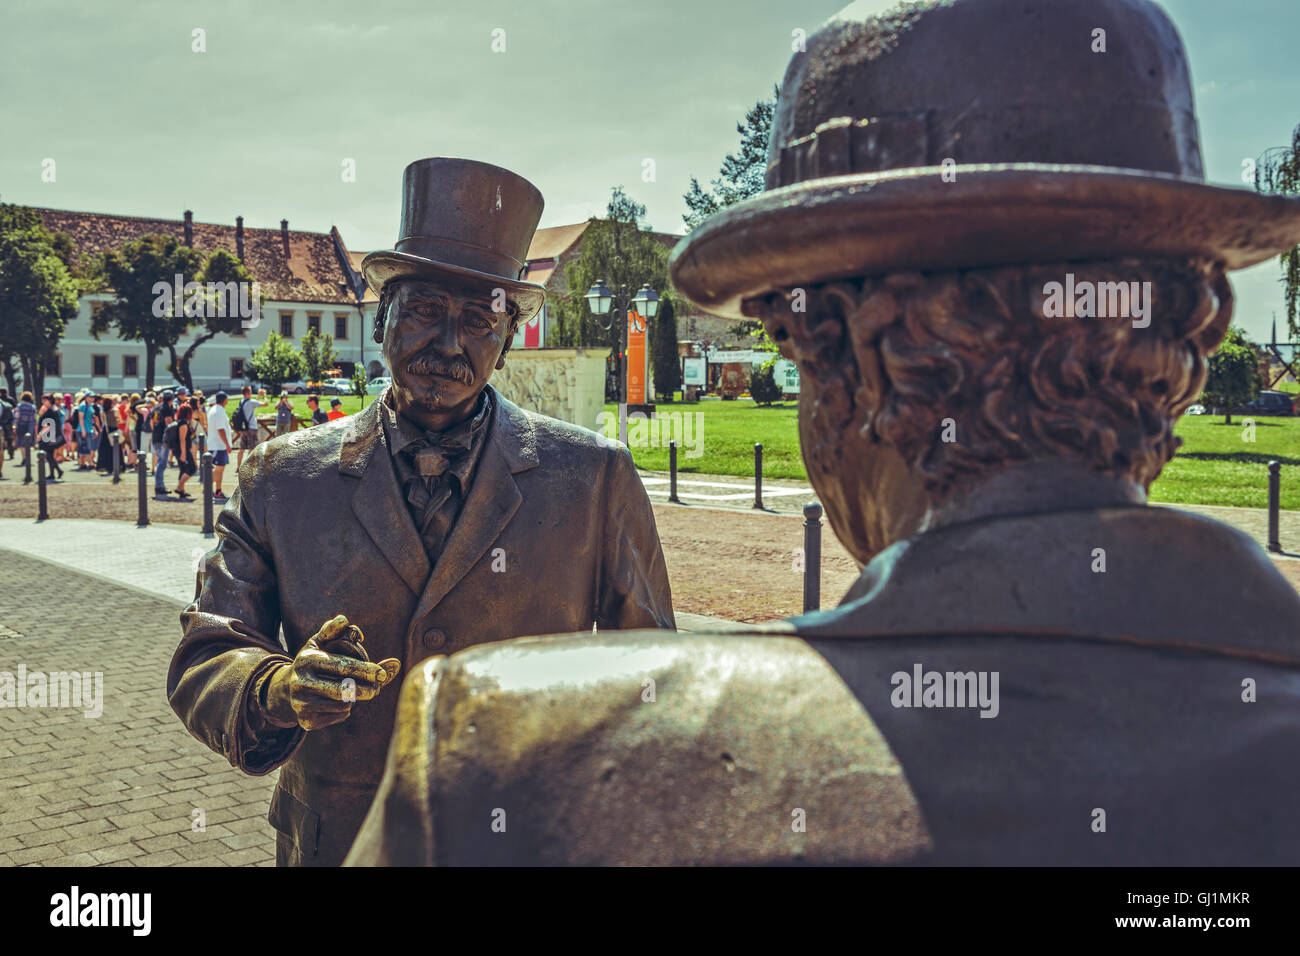 Alba Iulia, Romania - 24 Luglio 2016: Statue di bronzo in Alba Carolina Piazza Cittadella raffigurante due città folks con topper avente Foto Stock